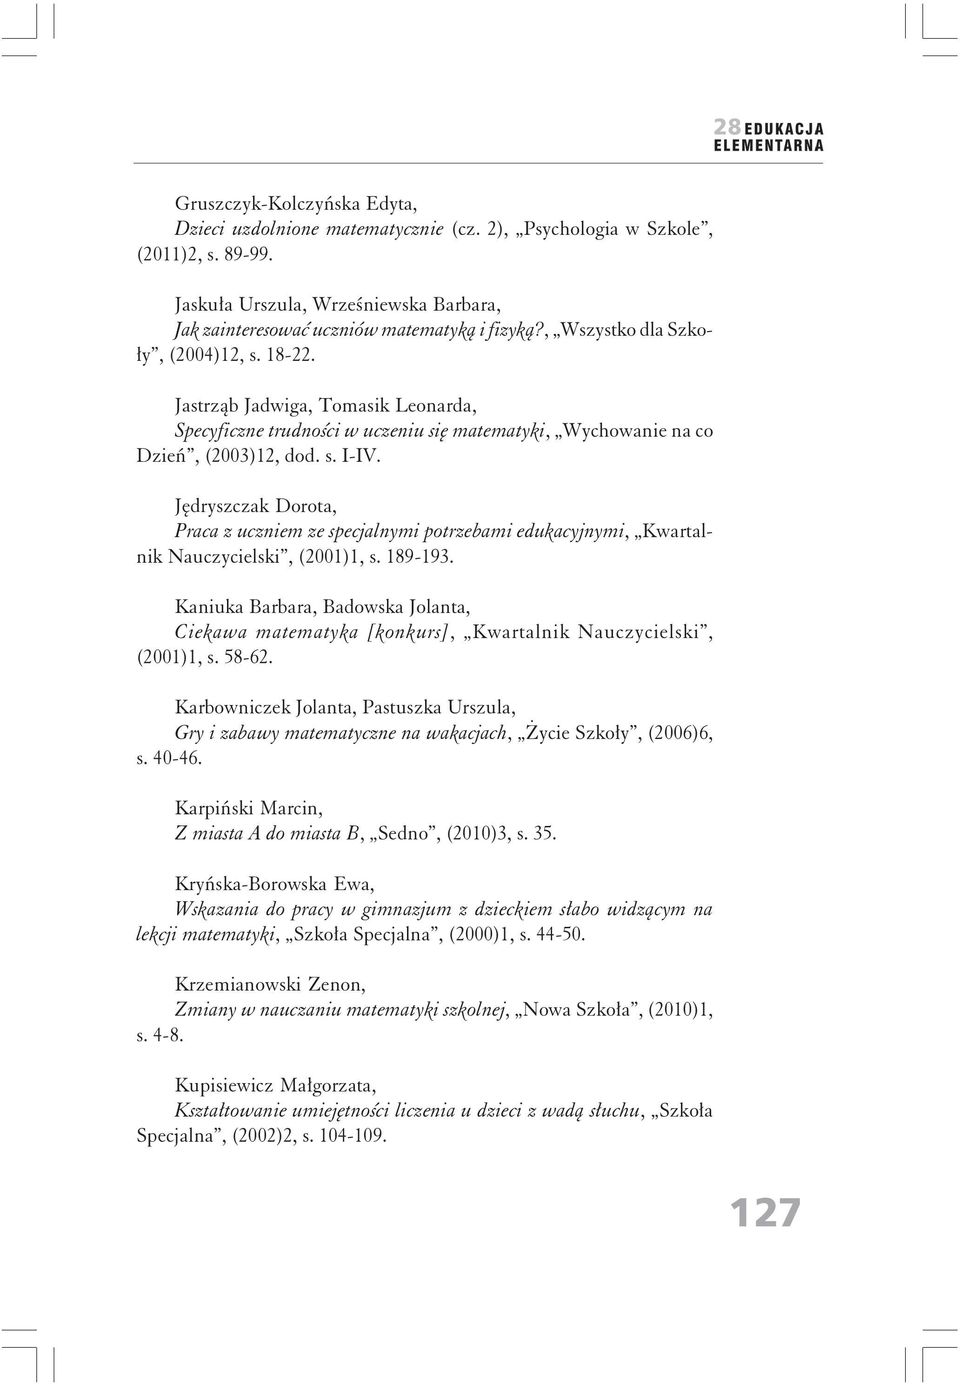 Jędryszczak Dorota, Praca z uczniem ze specjalnymi potrzebami edukacyjnymi, Kwartalnik Nauczycielski, (2001)1, s. 189-193.